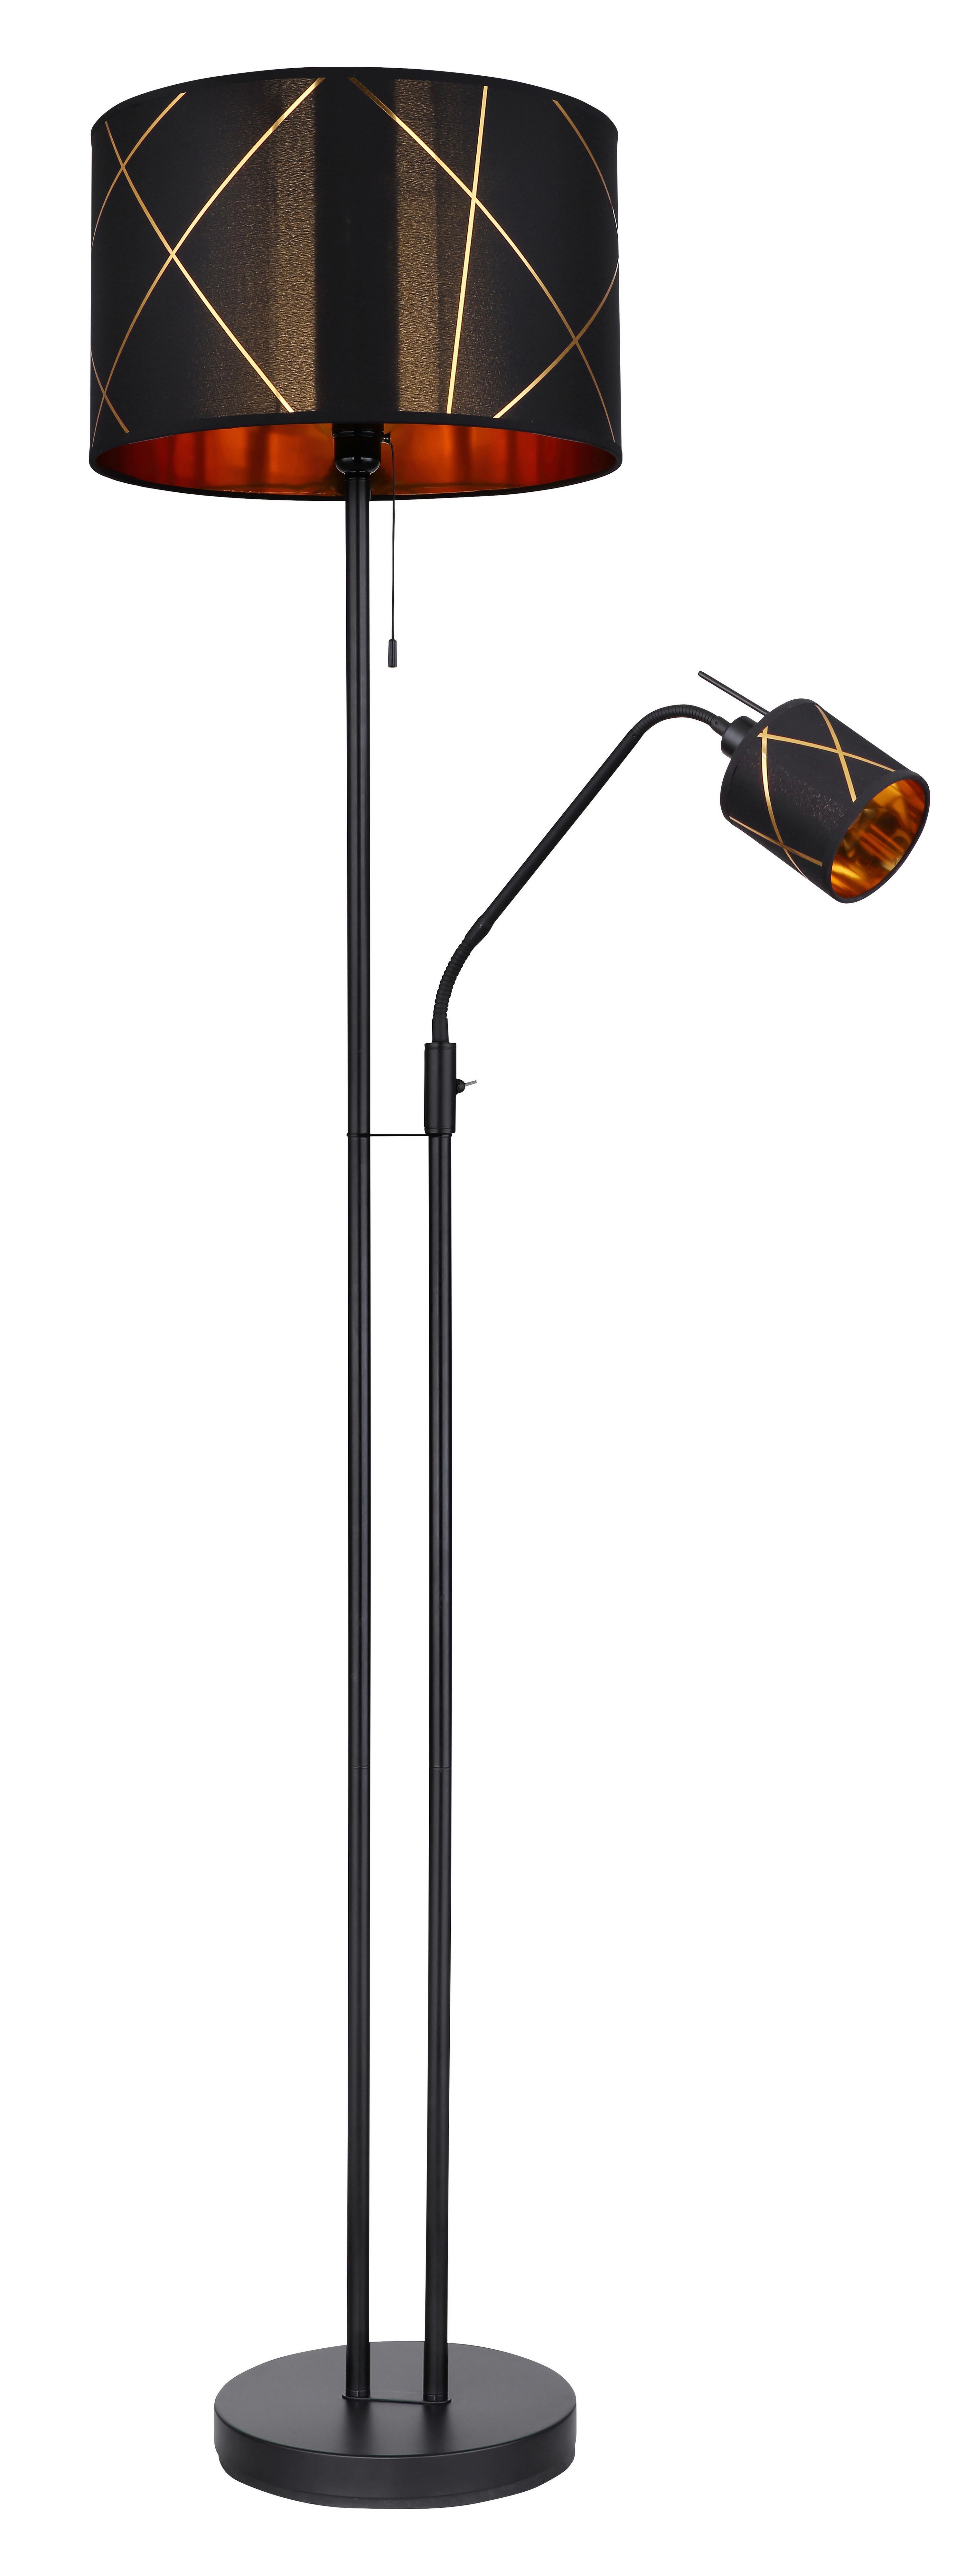 Stehlampe Vision Schwarz/Goldfarben mit Flexarm - Goldfarben/Schwarz, Design, Kunststoff/Textil (40/175cm) - Globo